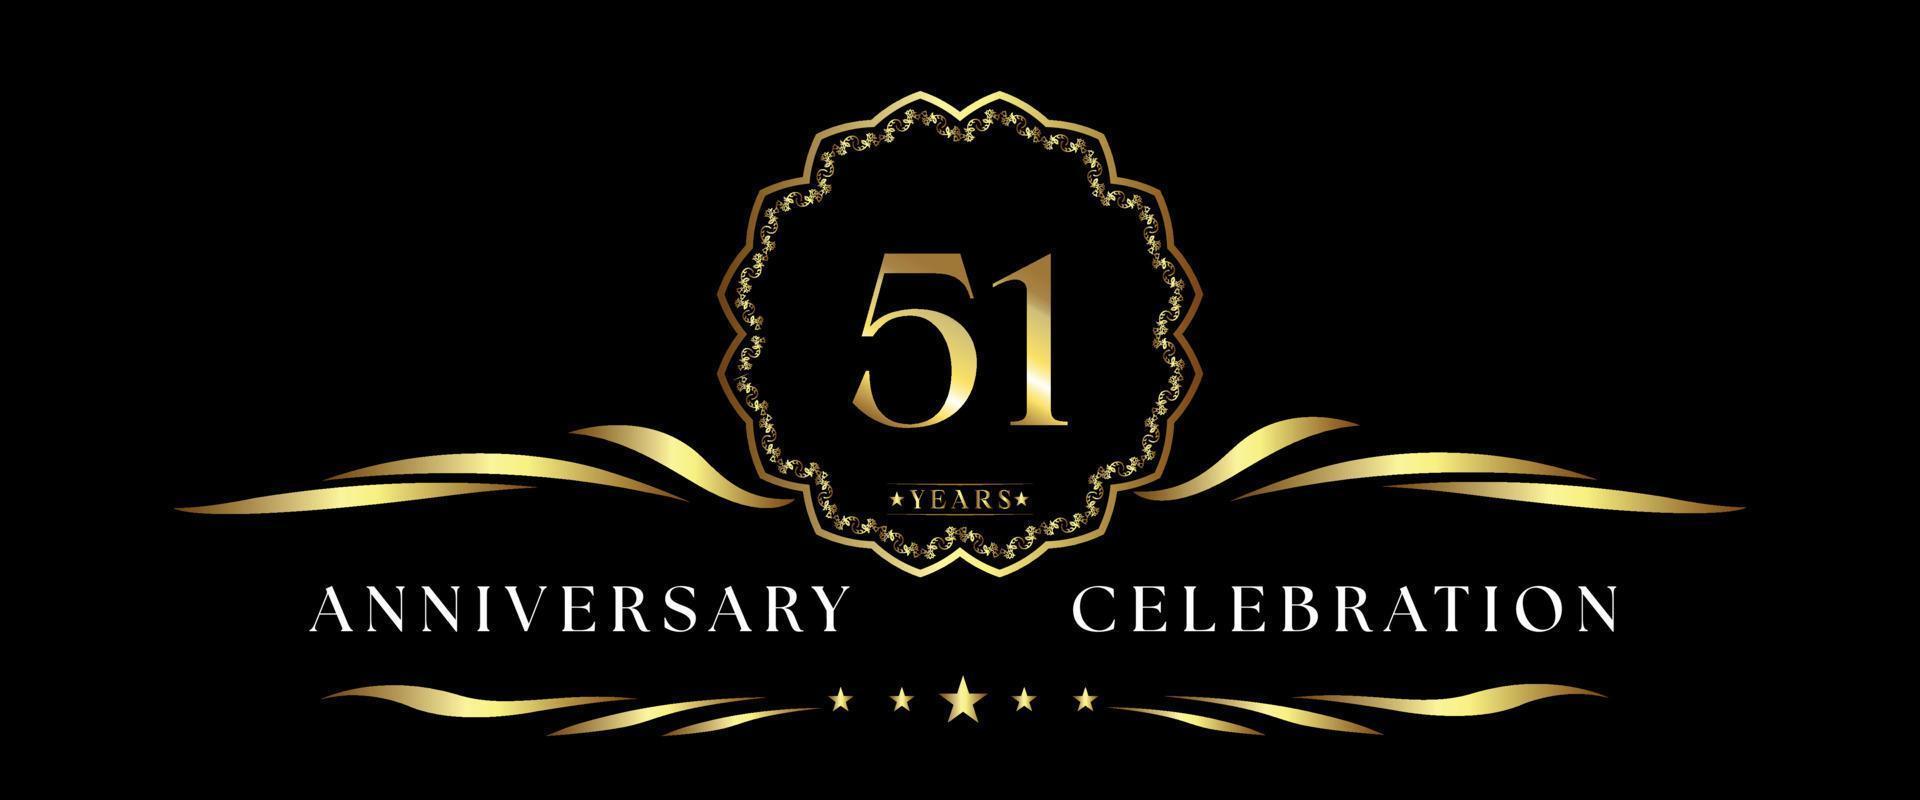 Celebración del aniversario de 51 años con marco decorativo dorado aislado en fondo negro. diseño vectorial para tarjetas de felicitación, fiesta de cumpleaños, boda, fiesta de eventos, ceremonia. Logotipo de aniversario de 51 años. vector